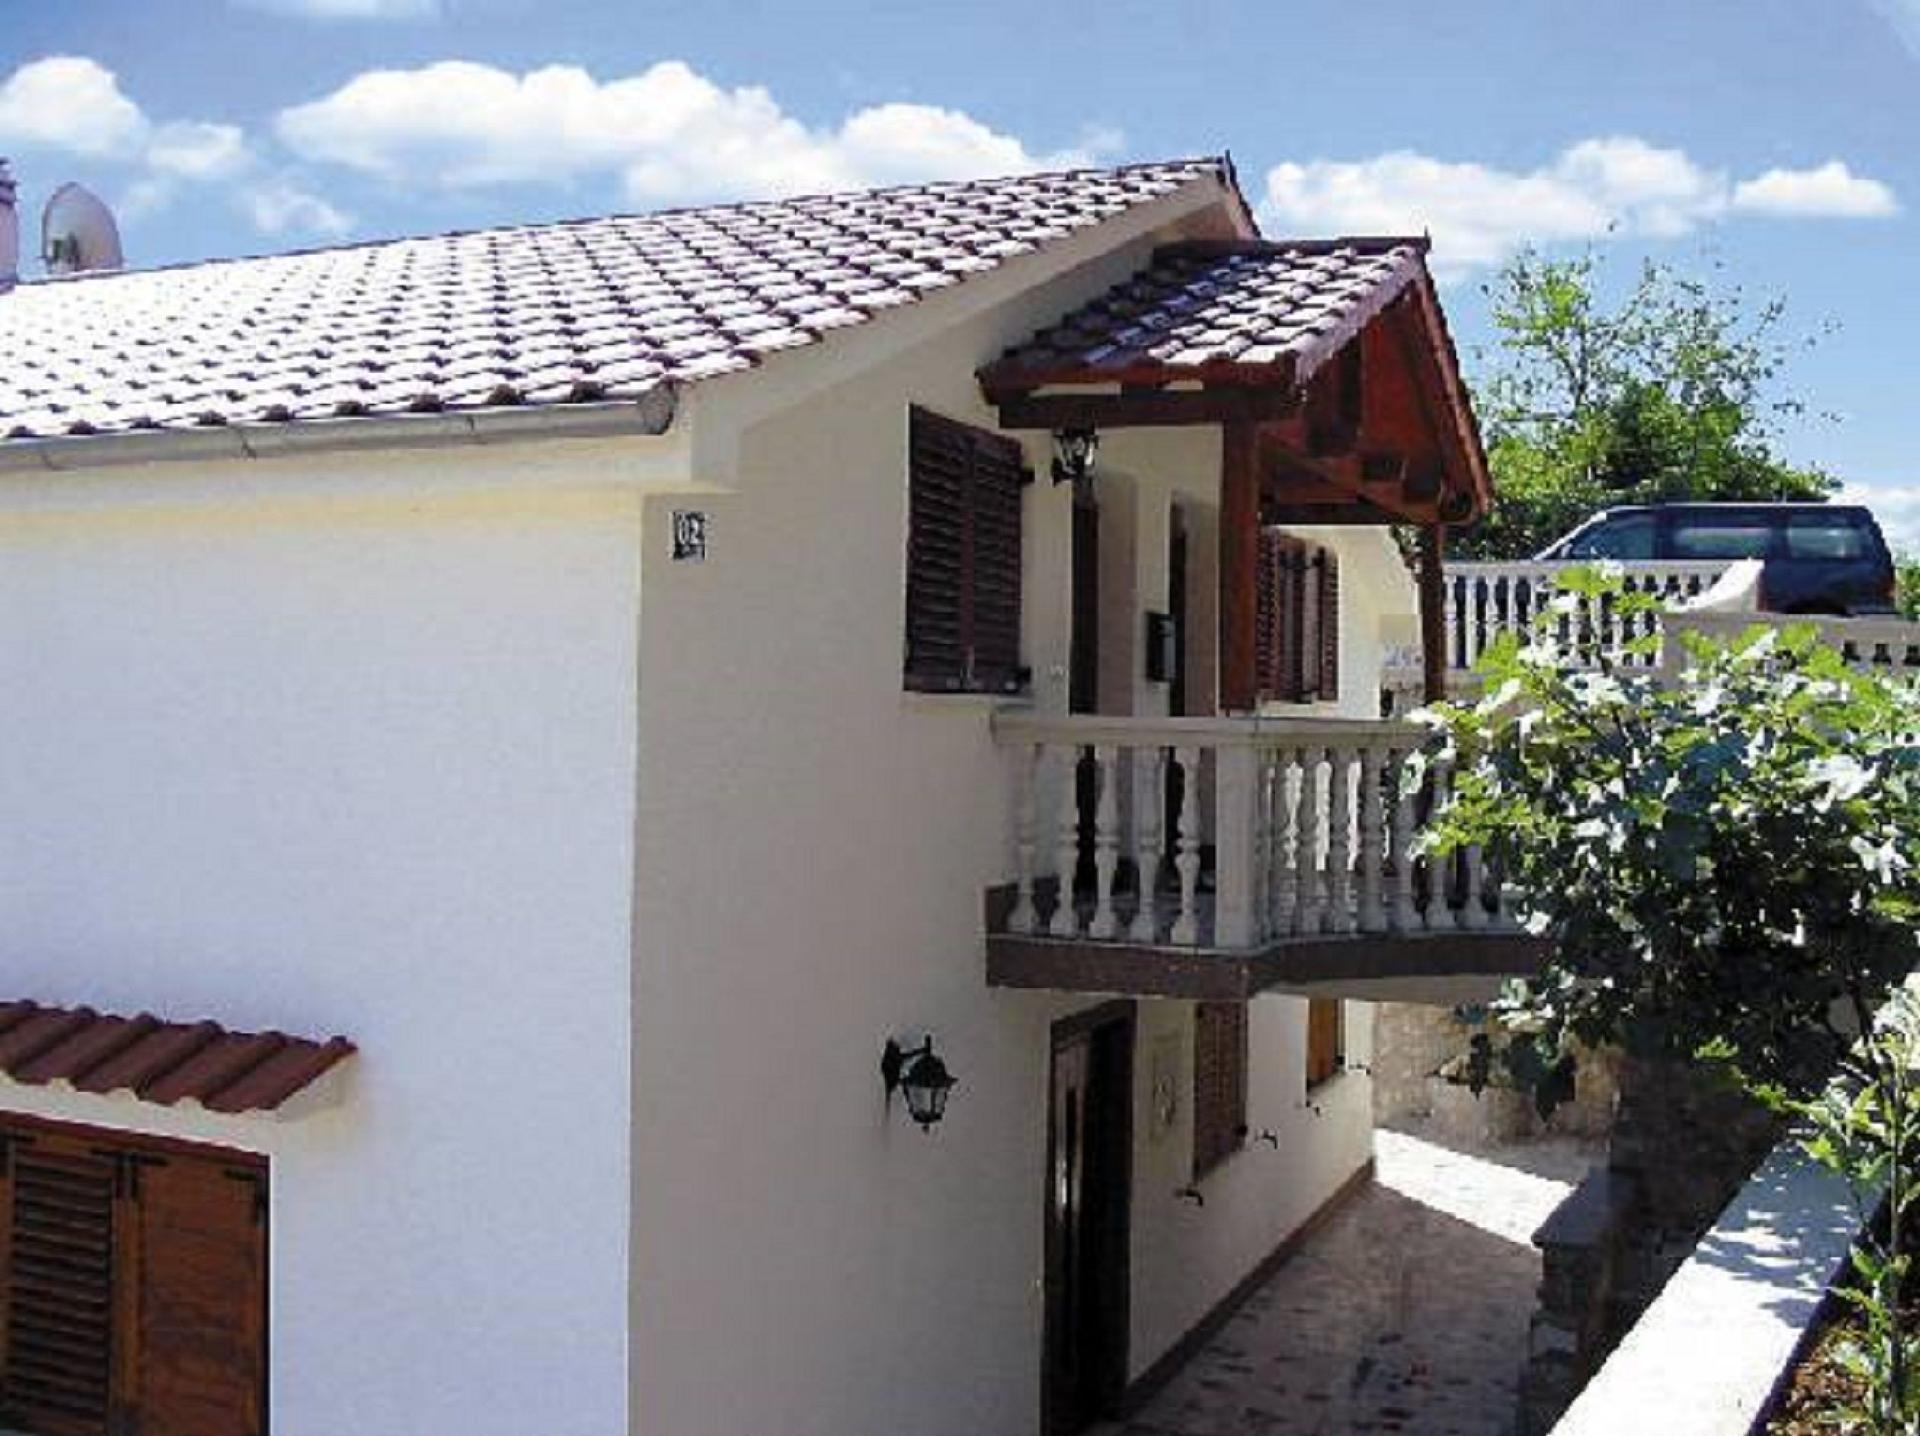 Ferienwohnung für 6 Personen ca. 56 m² i Ferienhaus in Kroatien